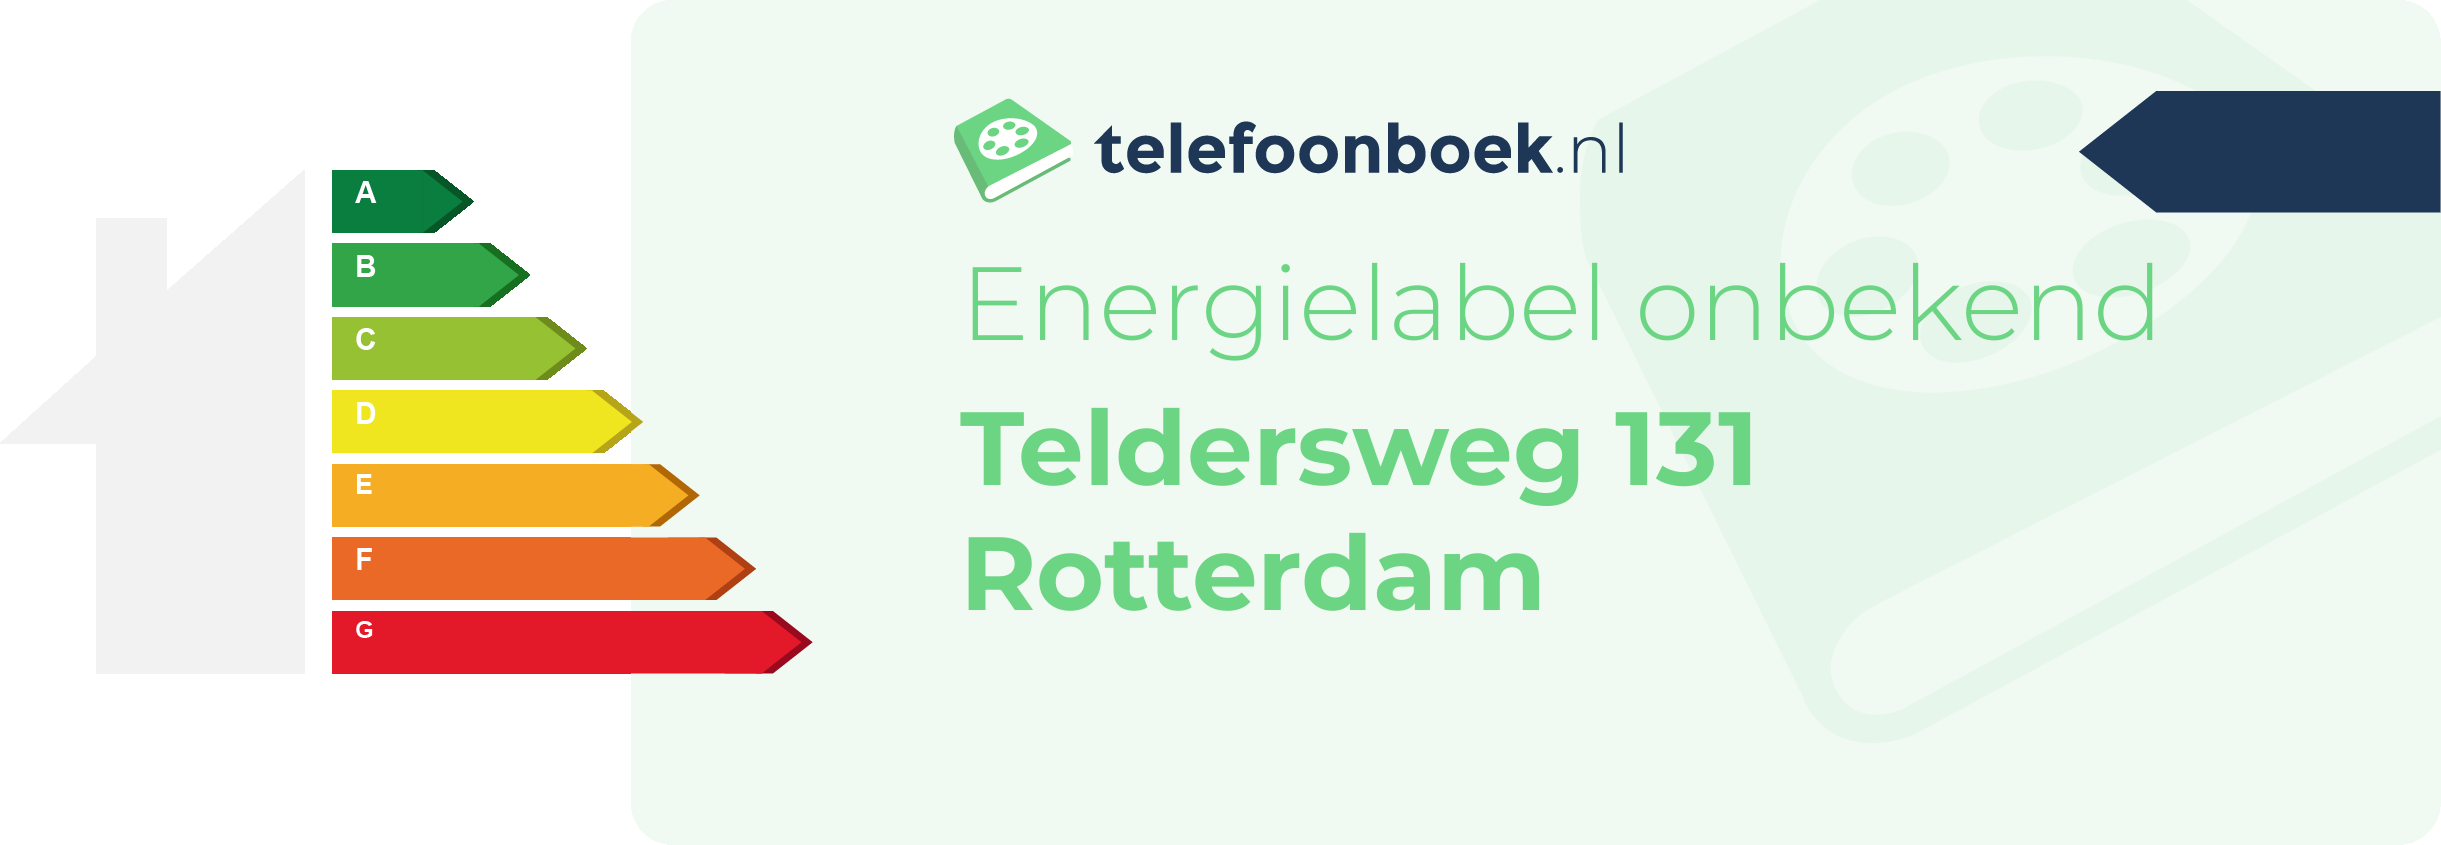 Energielabel Teldersweg 131 Rotterdam